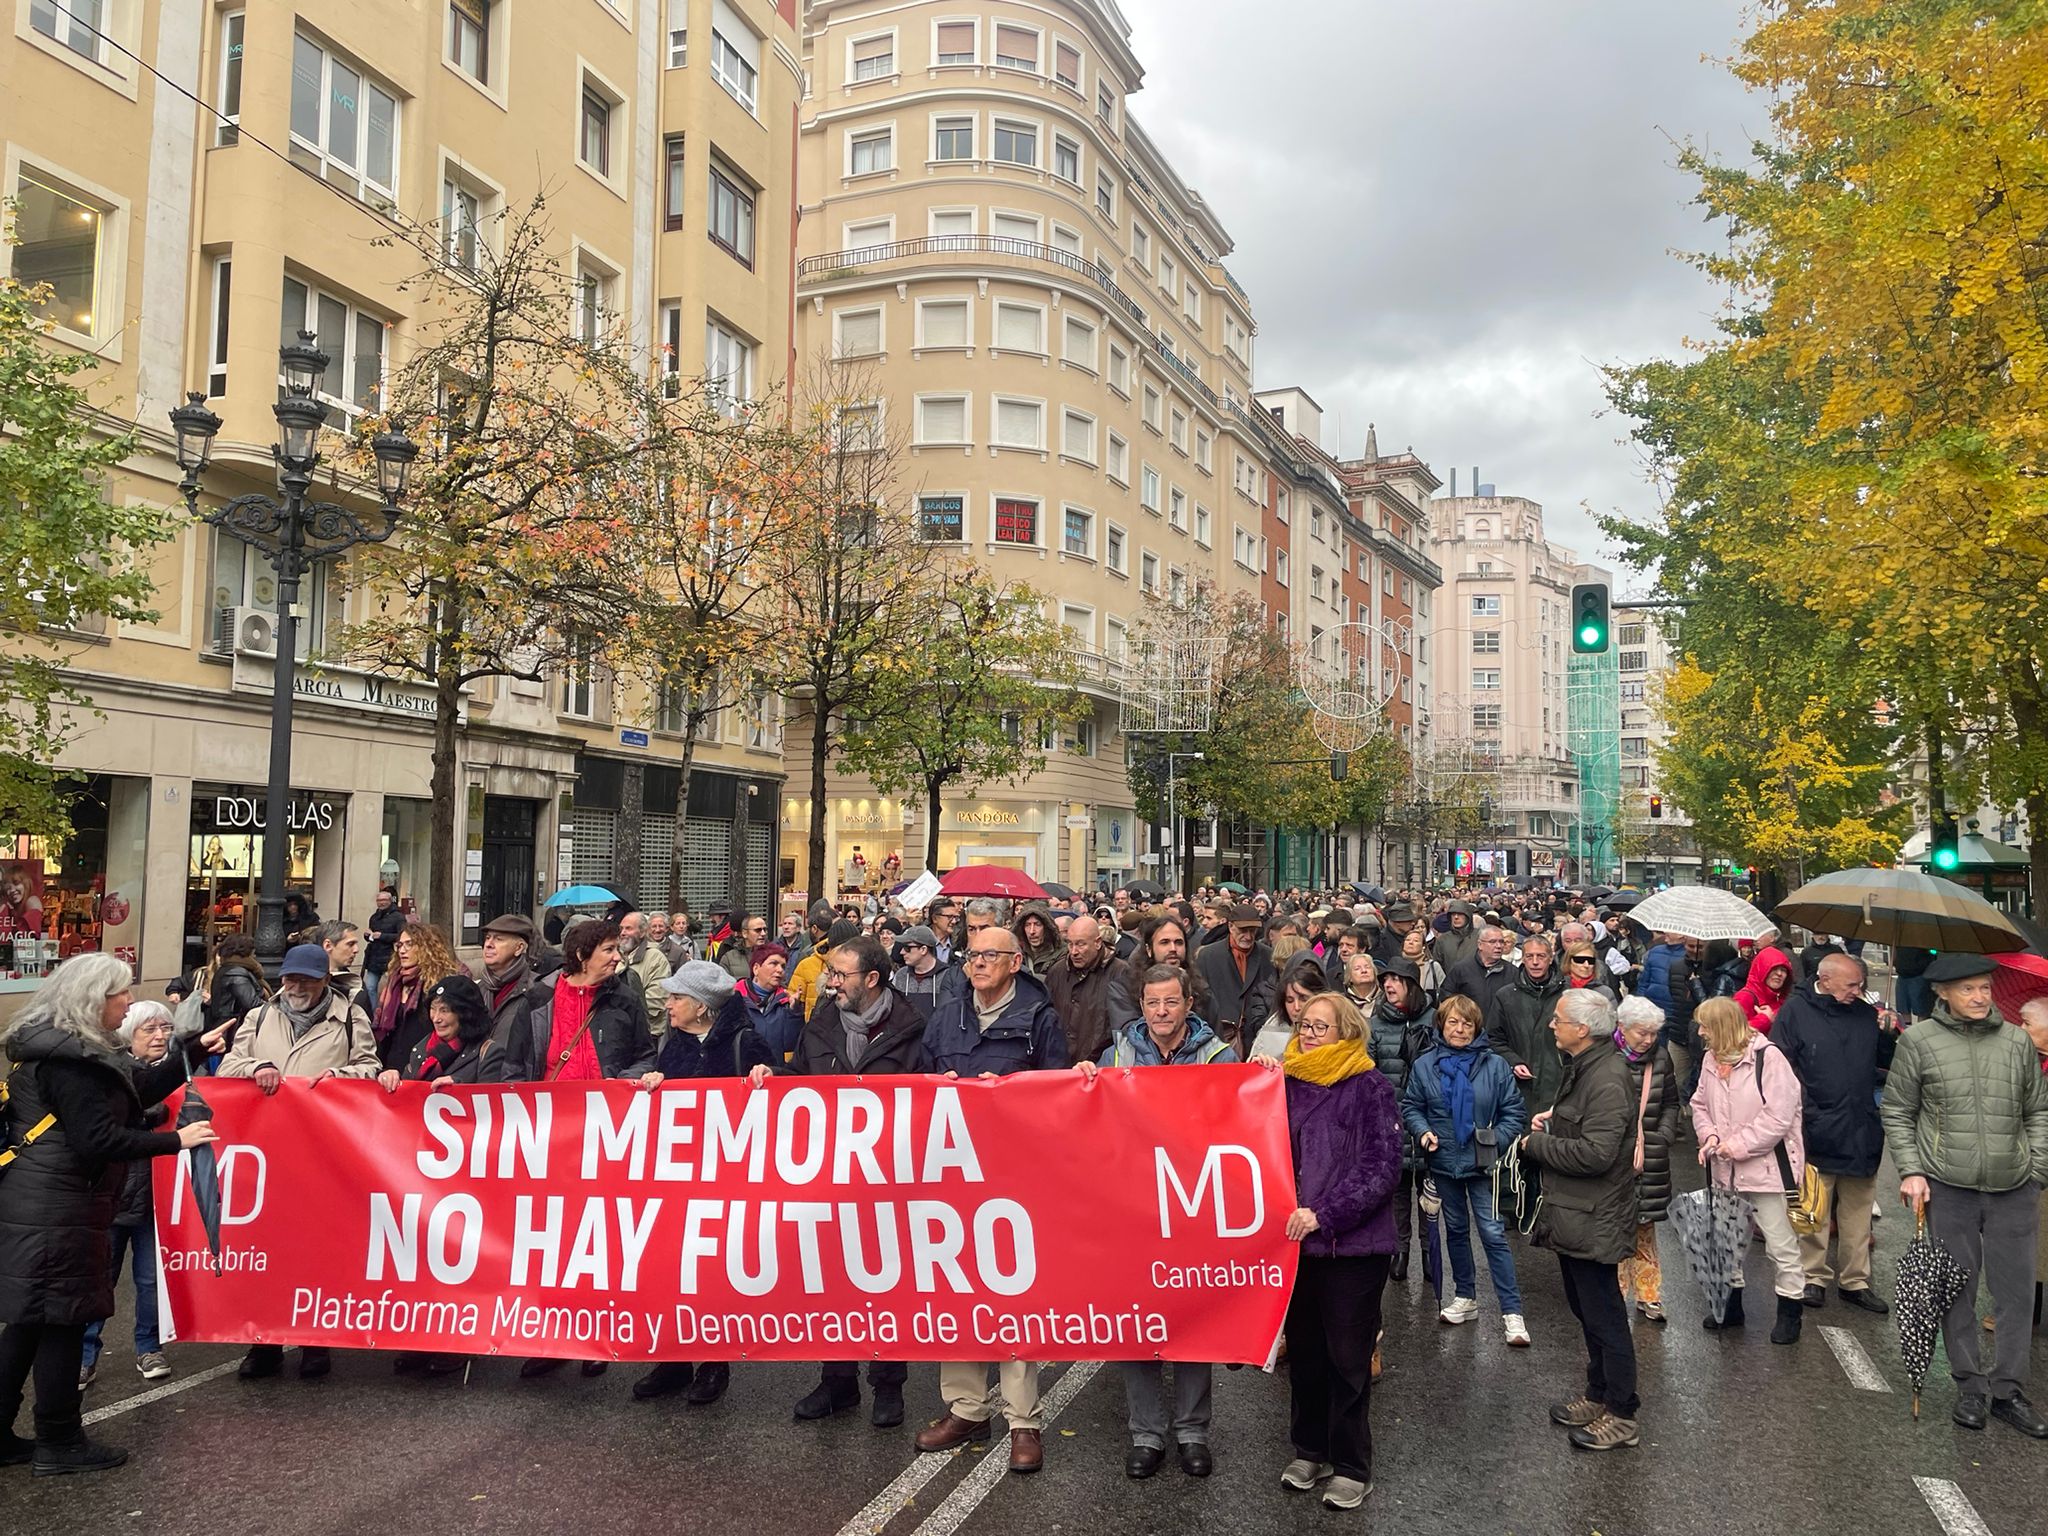 Cerca de 2.000 personas protestan bajo la lluvia contra el intento de derogación de la Ley de Memoria Histórica y Democrática de Cantabria